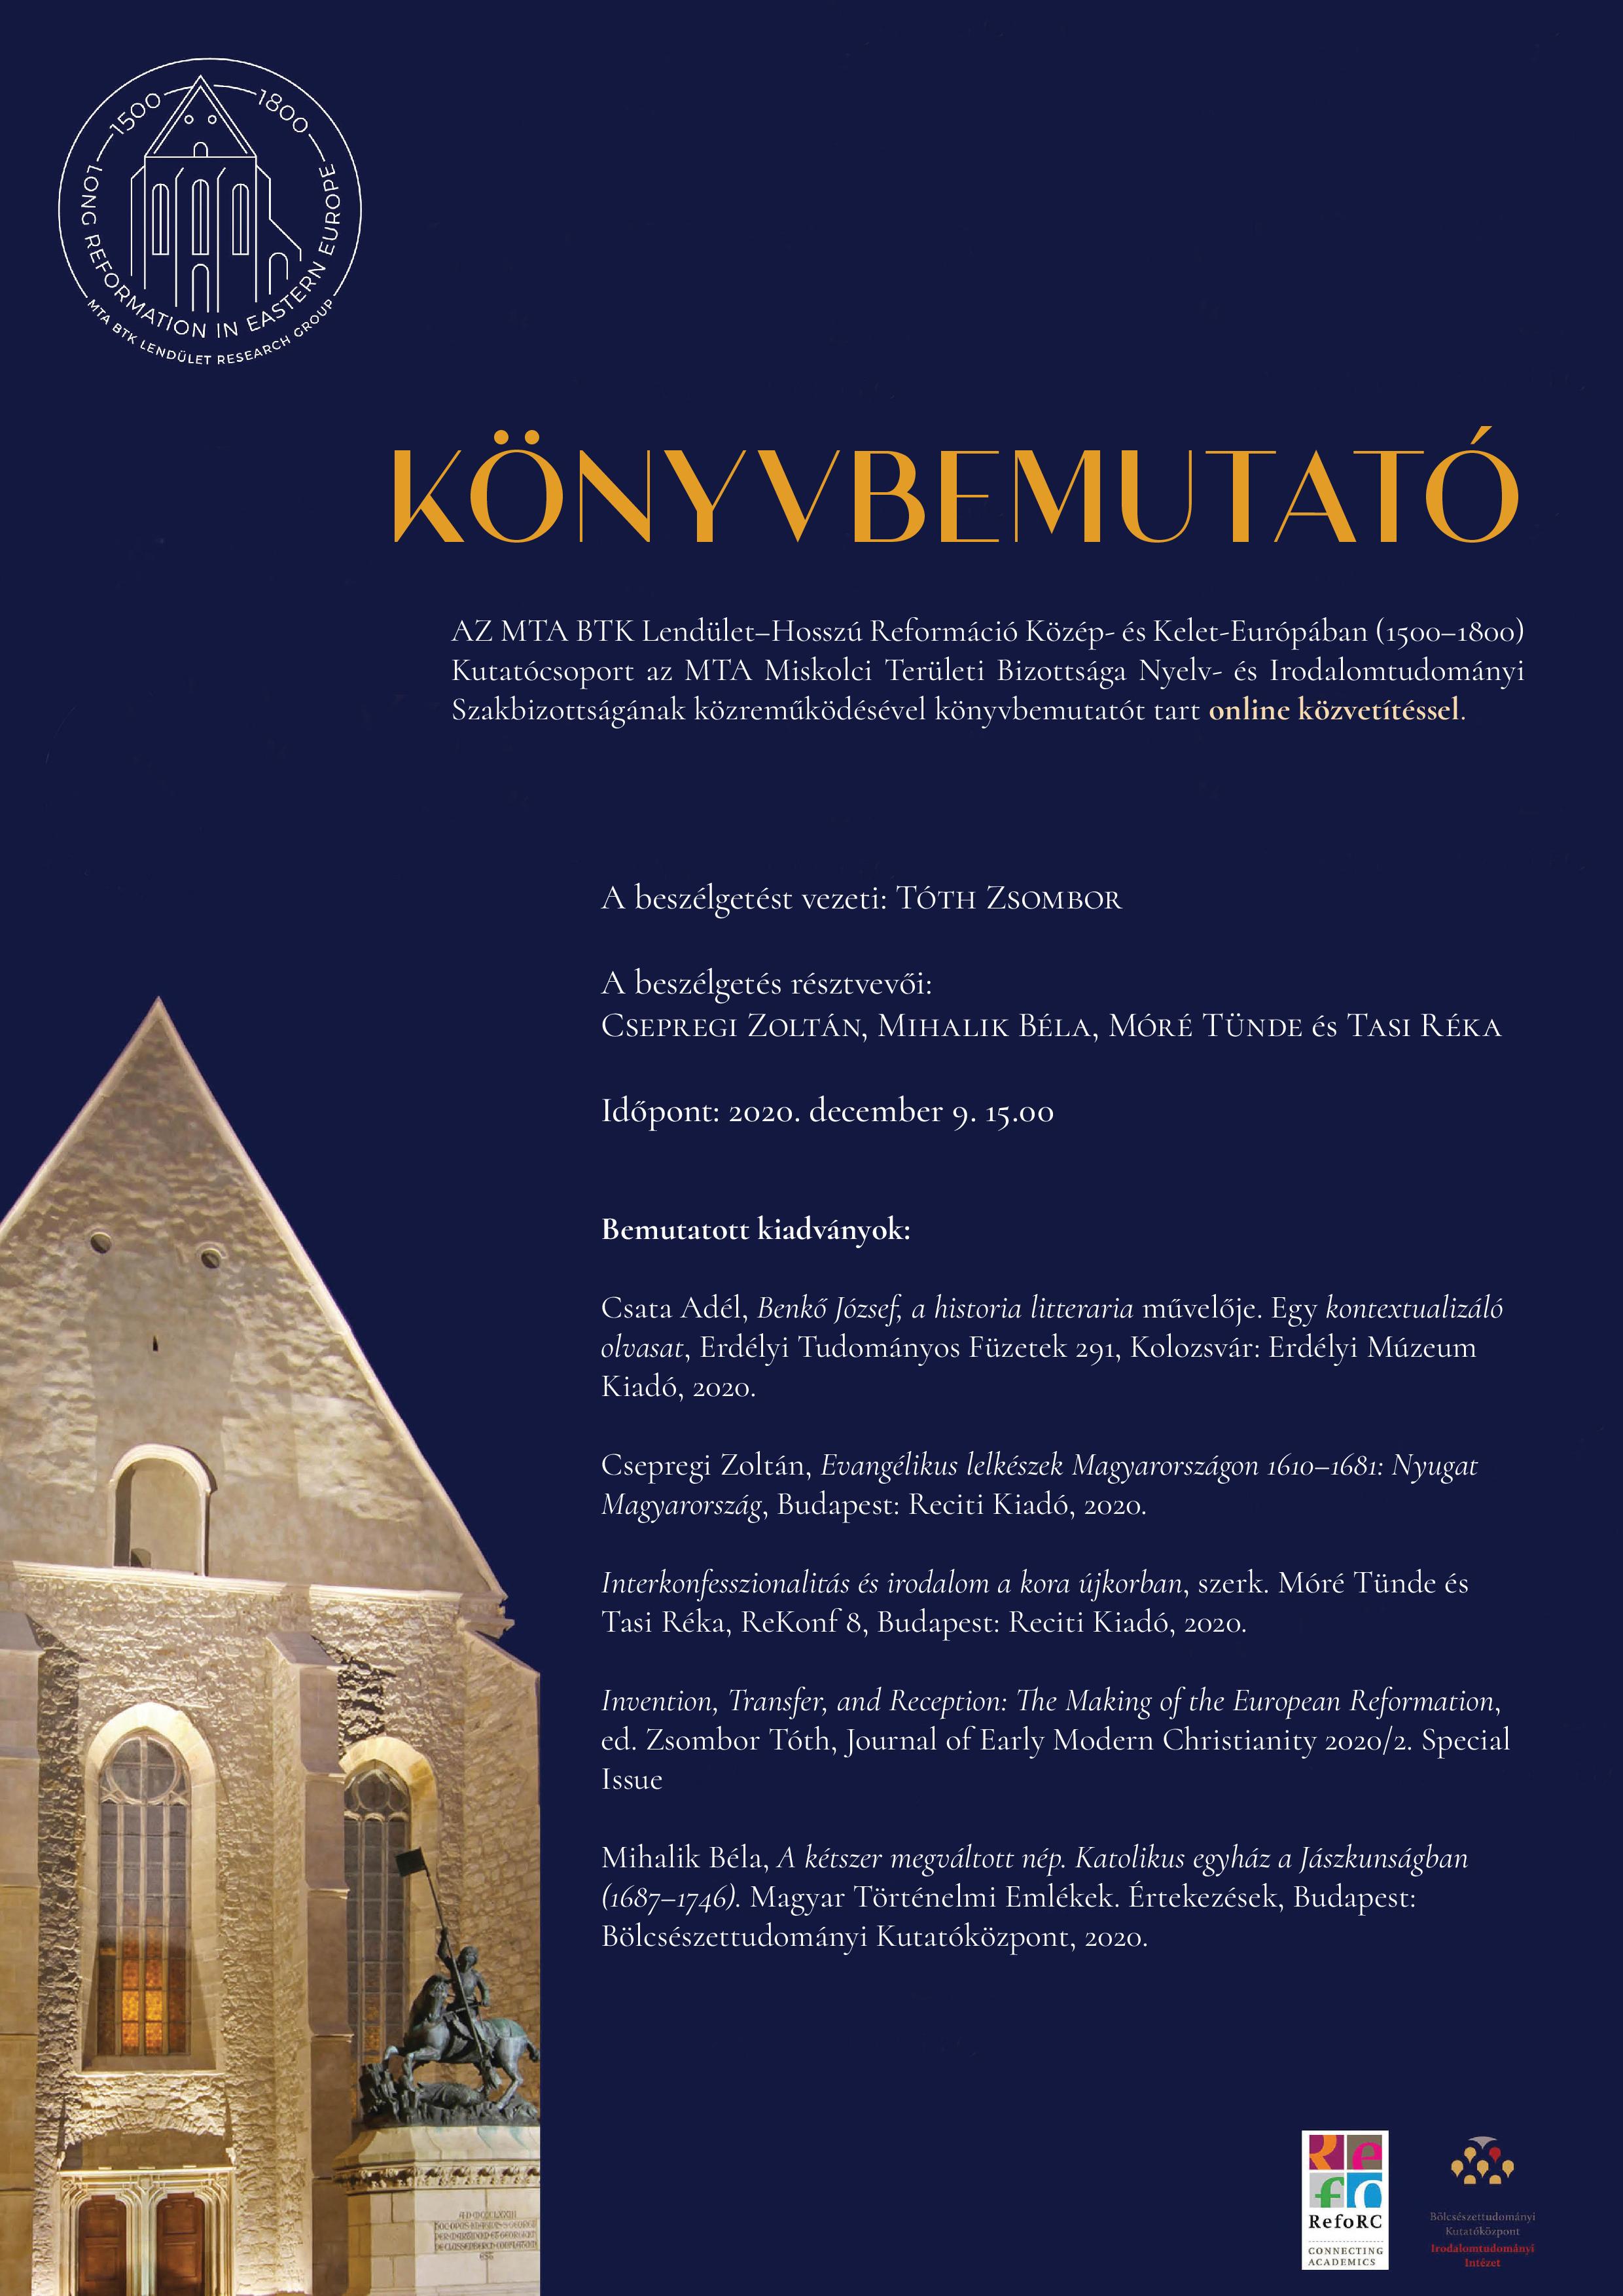 A Hosszú Reformáció Közép- és Kelet-Európában Lendület Kutatócsoport könyvbemutatója